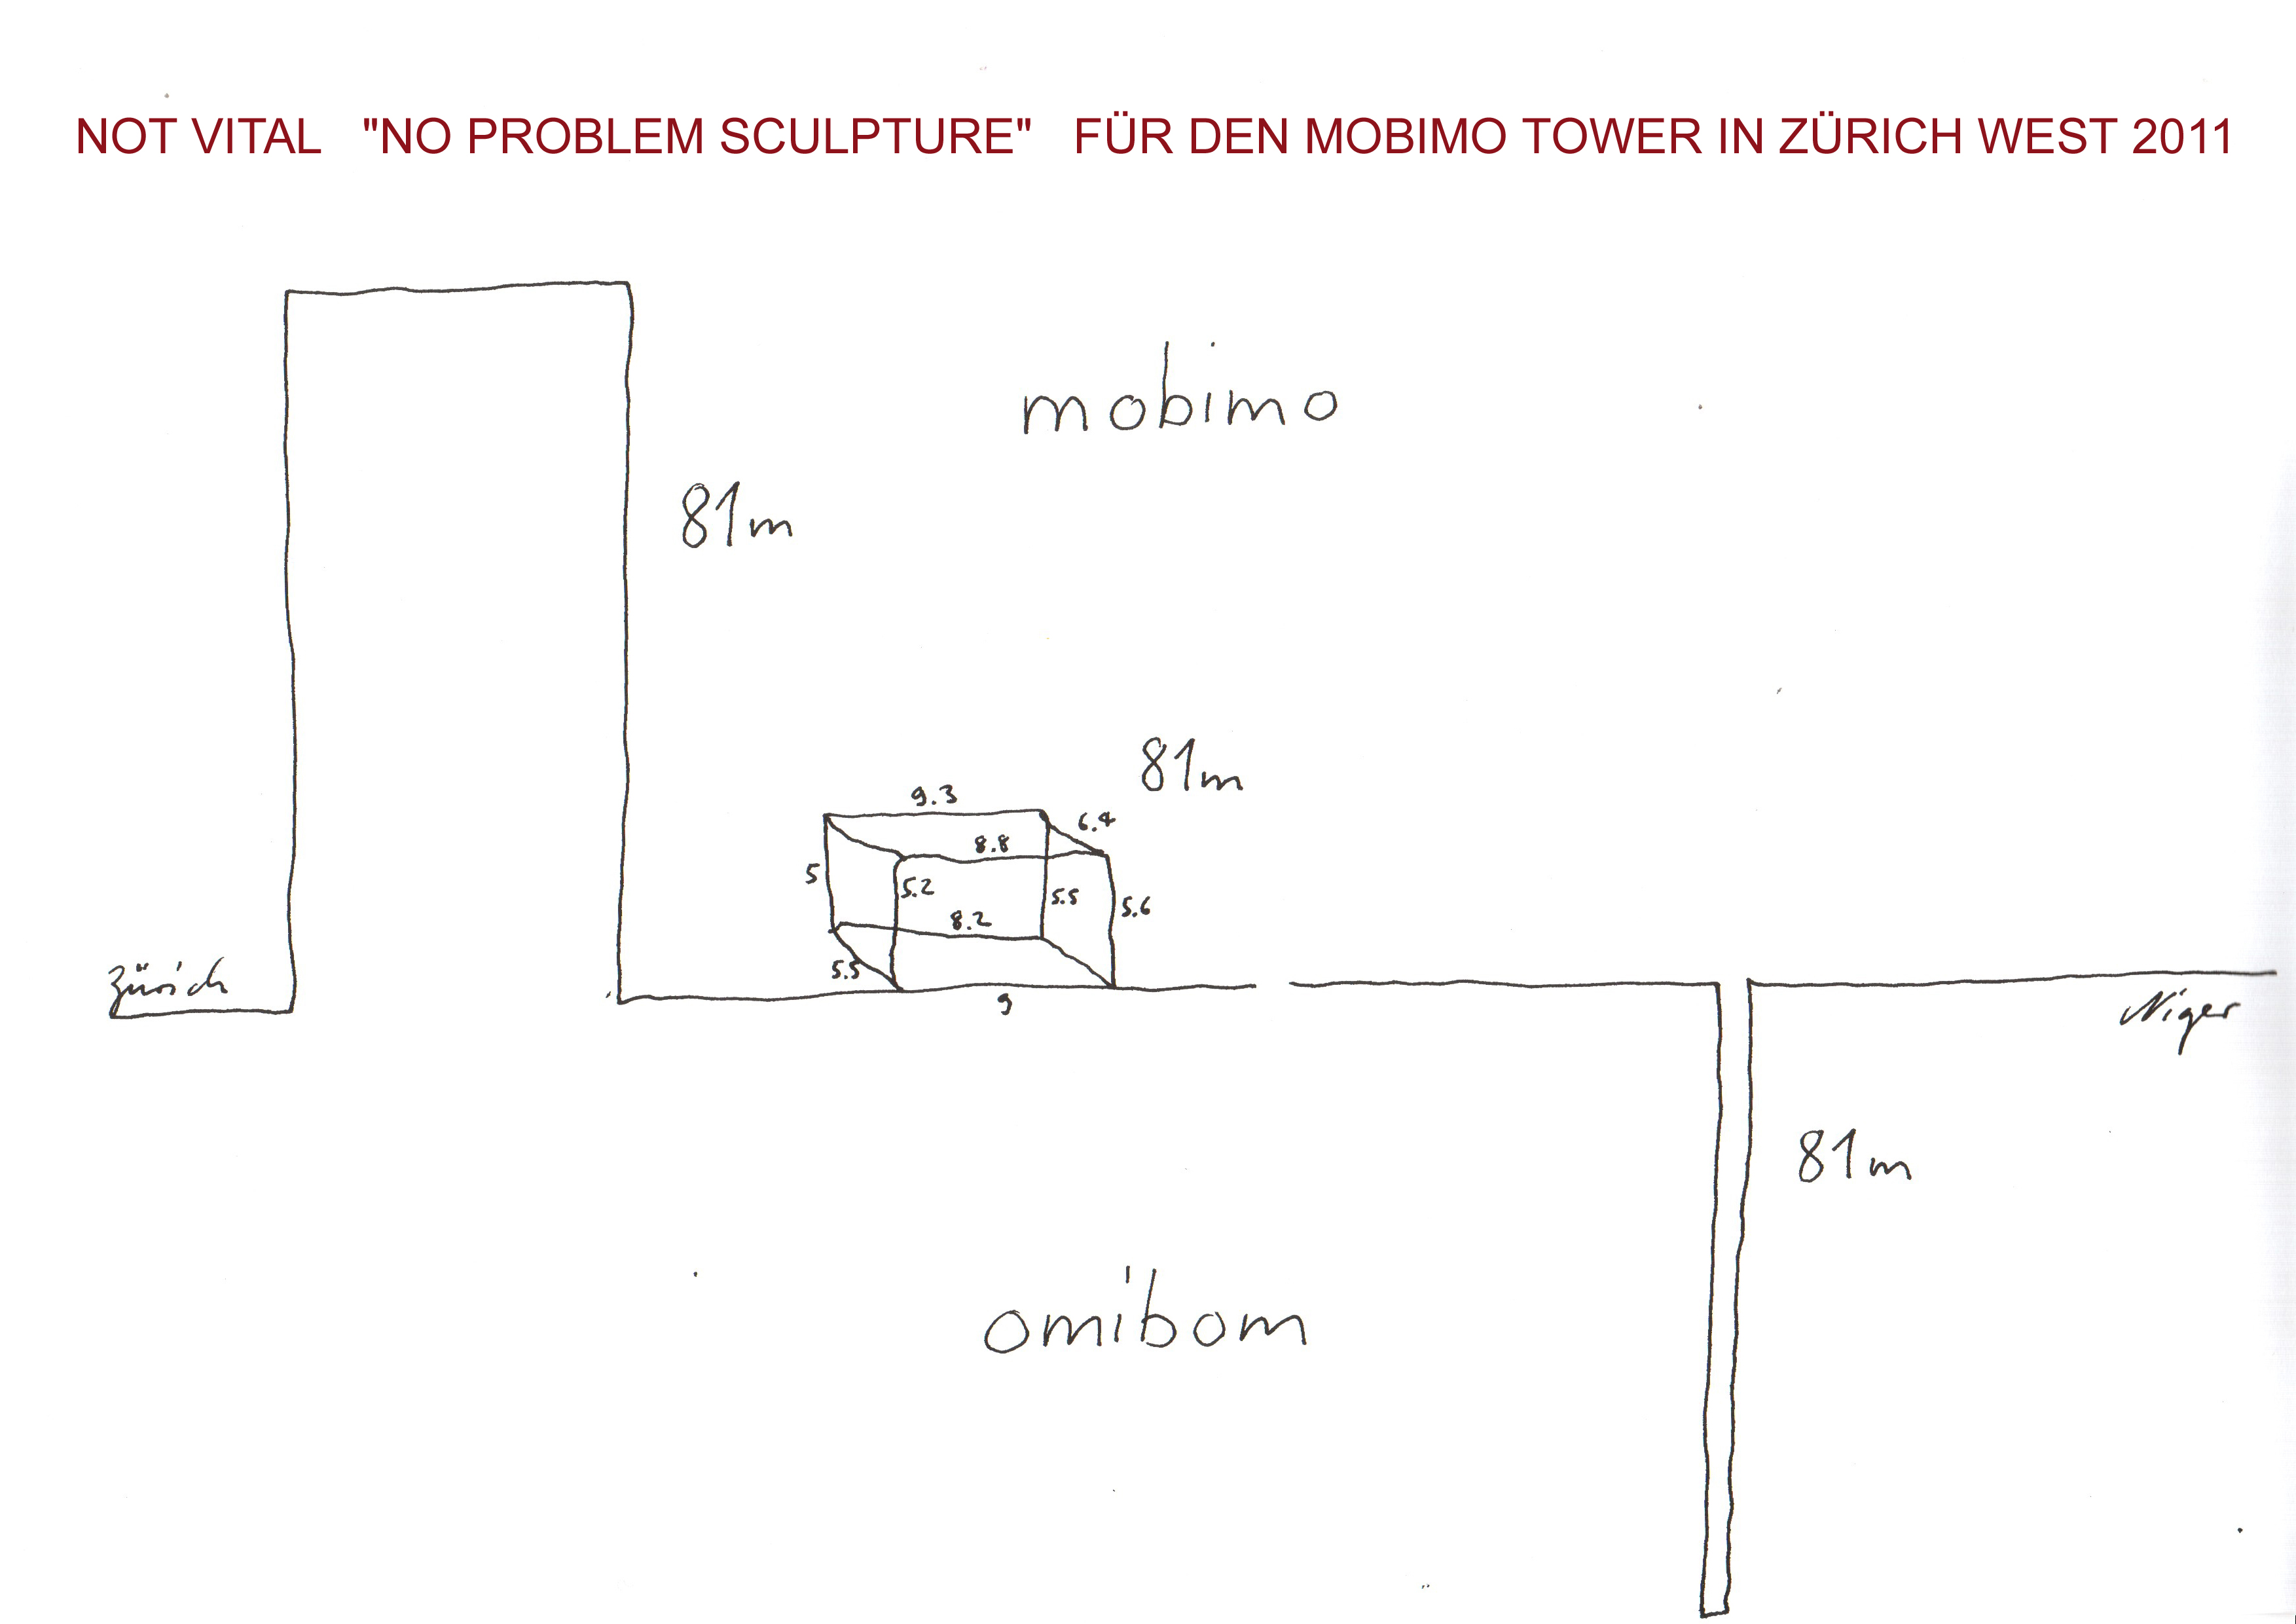 Not Vital Skizze der NO PROBLEM SCULPTURE für den MOBIMO TOWER Zürich West 2011 - ausgestellt bei Ute Barth